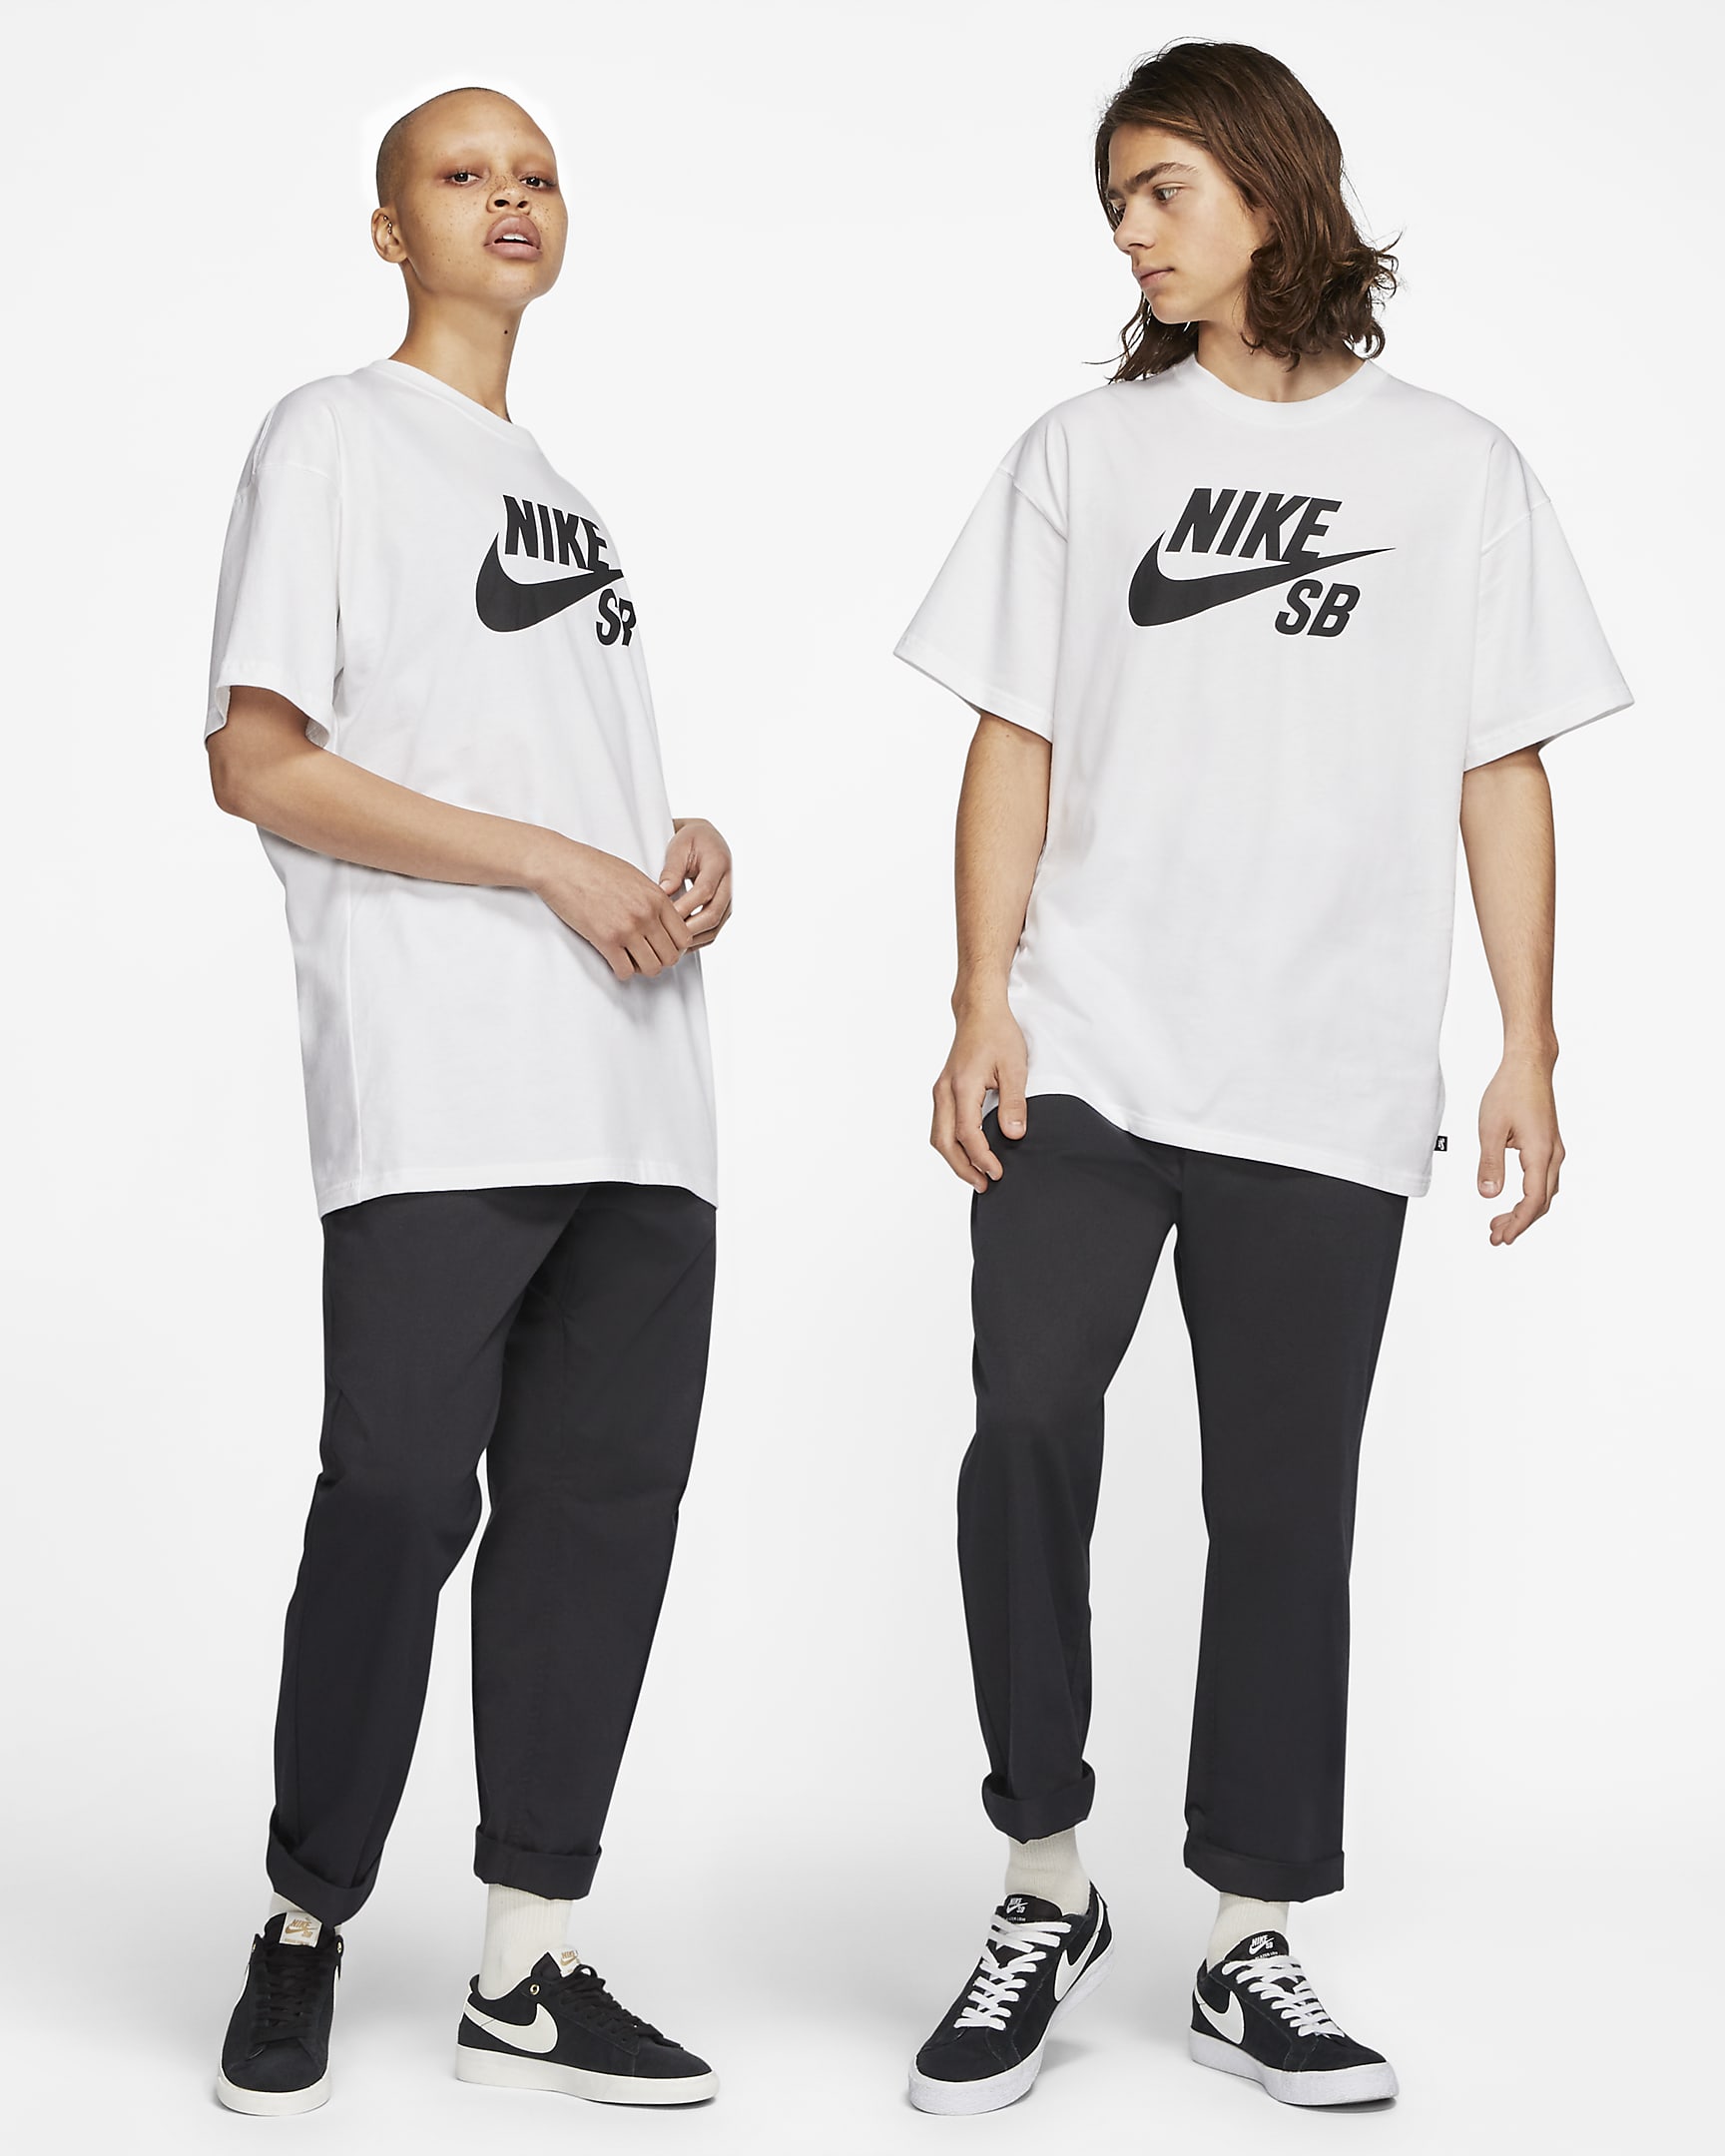 Skateboard-t-shirt Nike SB Logo - Vit/Svart